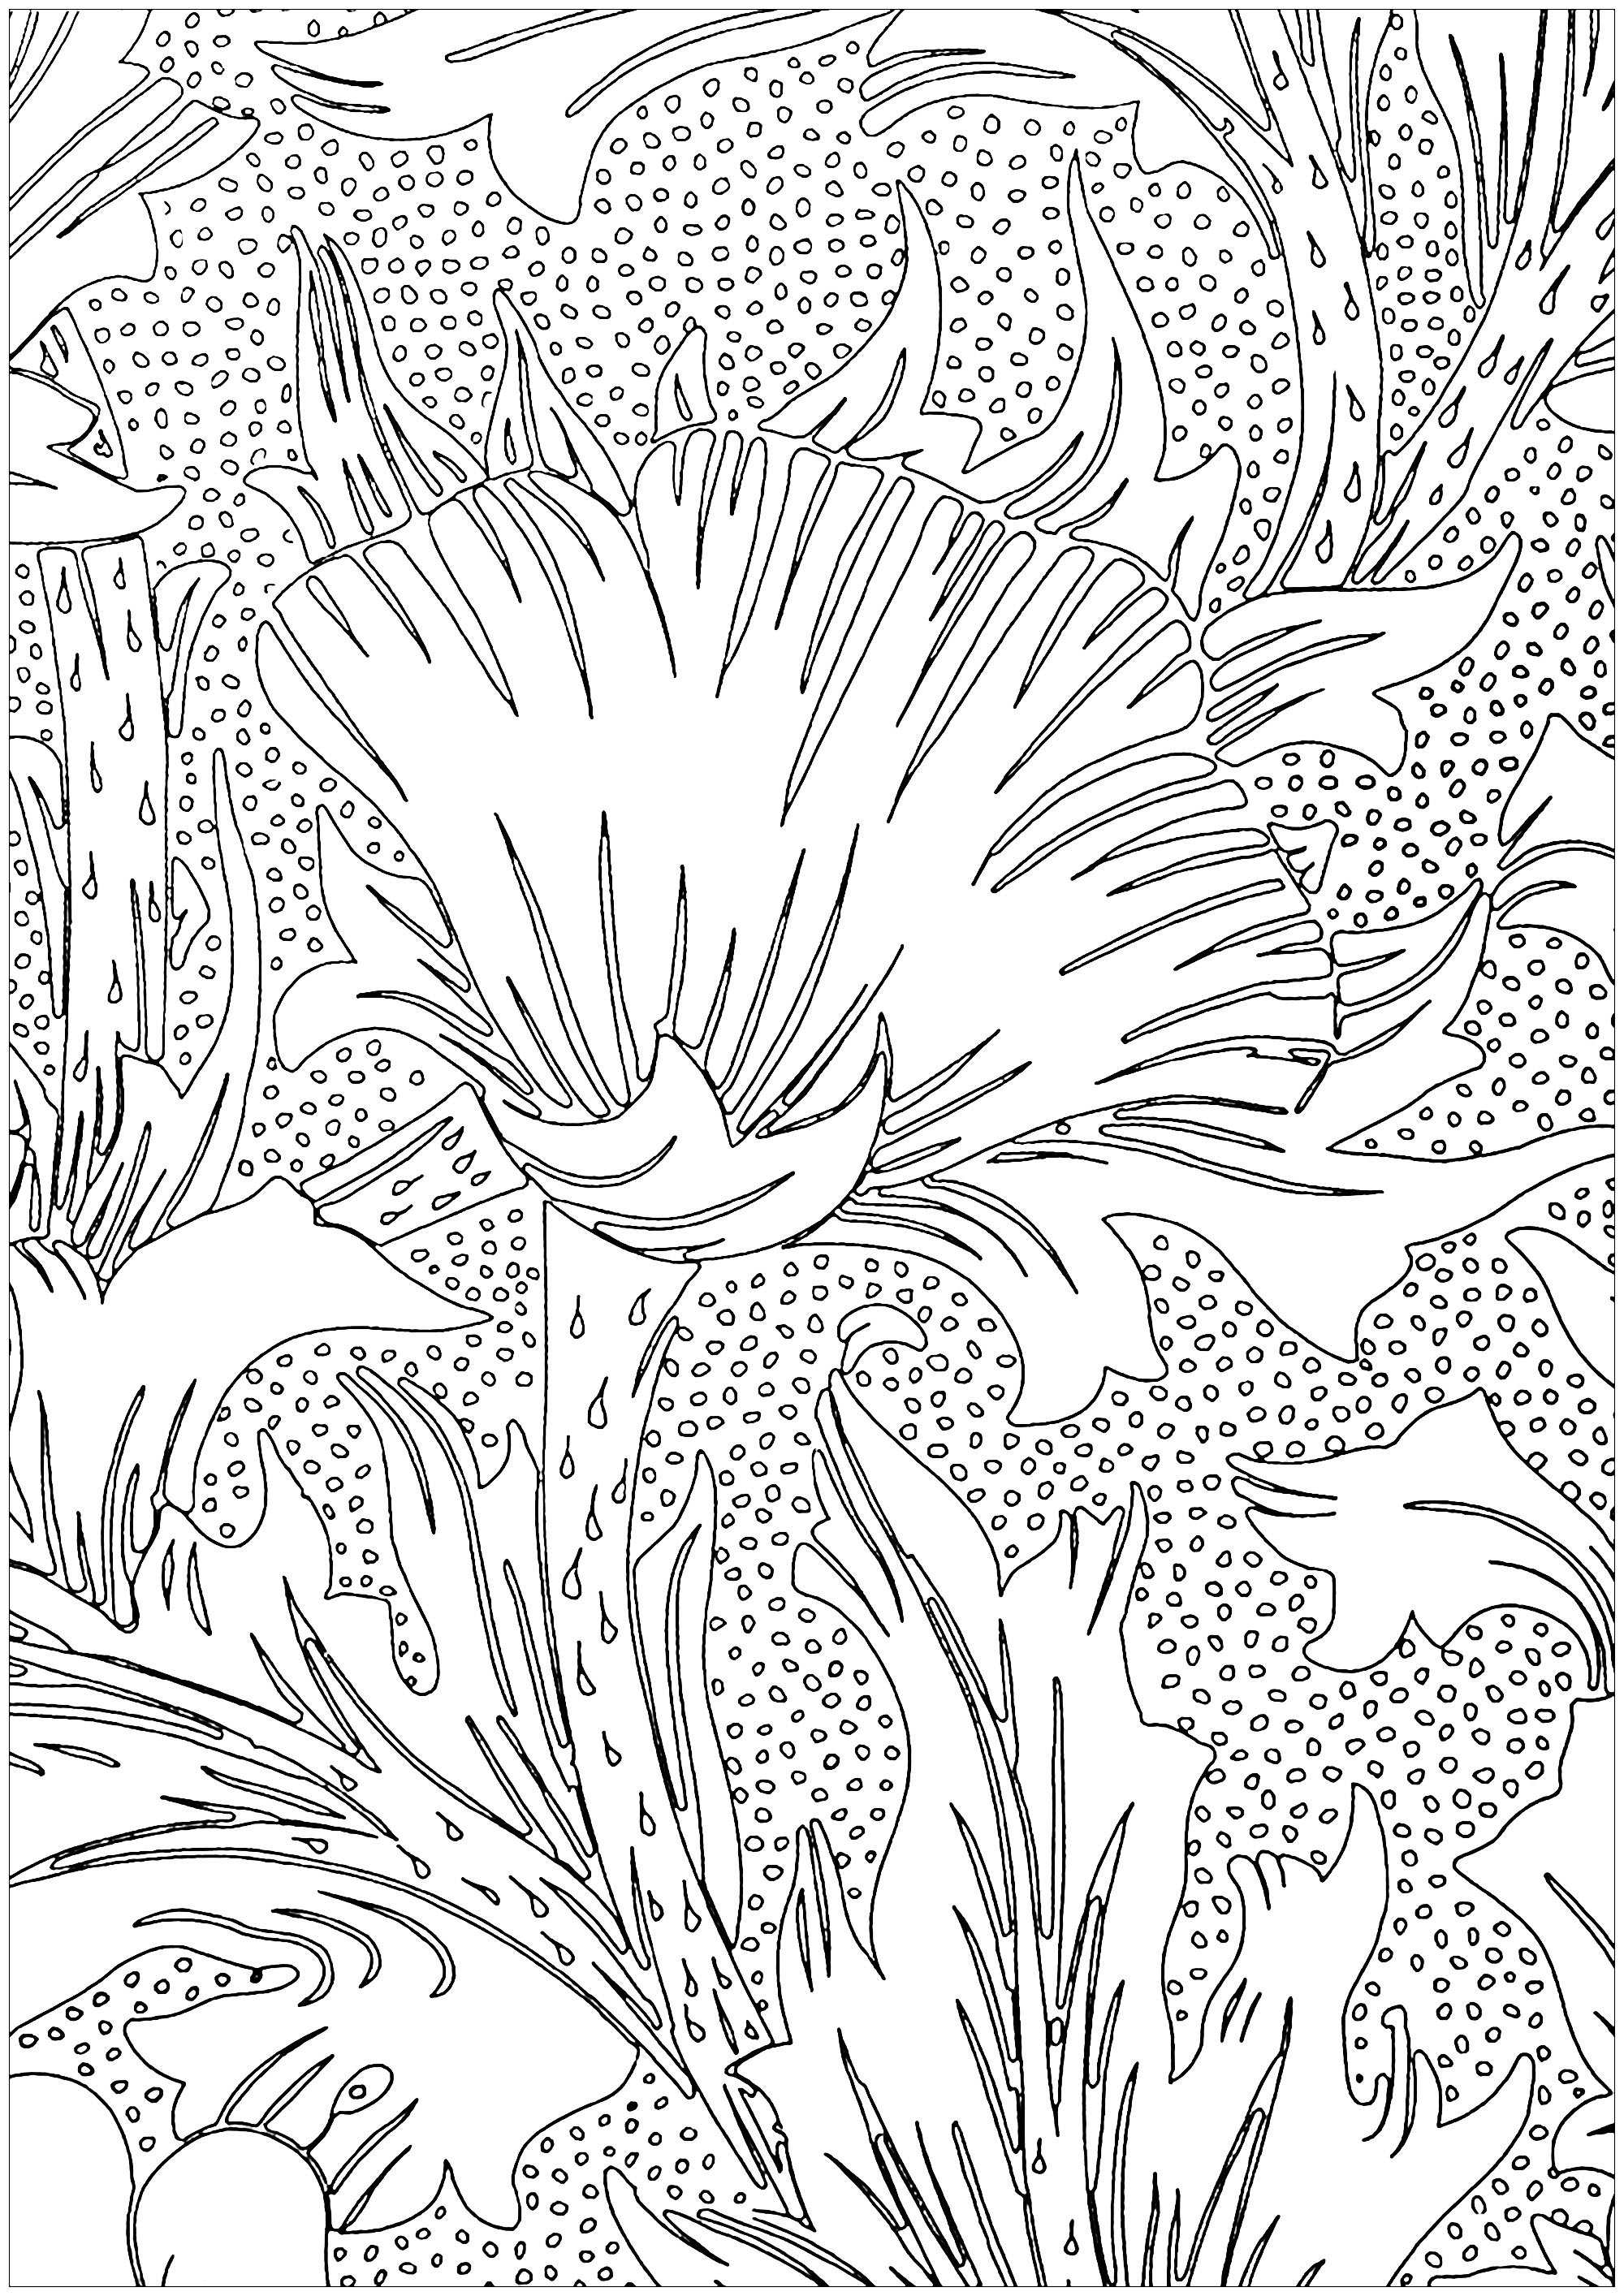 Página para colorir criada a partir de um desenho de Artes & Artesanato representando flores, de May Morris (1885). May Morris (1862 1938), filha mais nova de William Morris, foi uma artista inglesa, artesã, desenhadora de bordados, joalheira e expoente máximo do movimento britânico Arts & Crafts. Especializada em bordados, desenhou alguns dos mais importantes têxteis da Morris & Co.